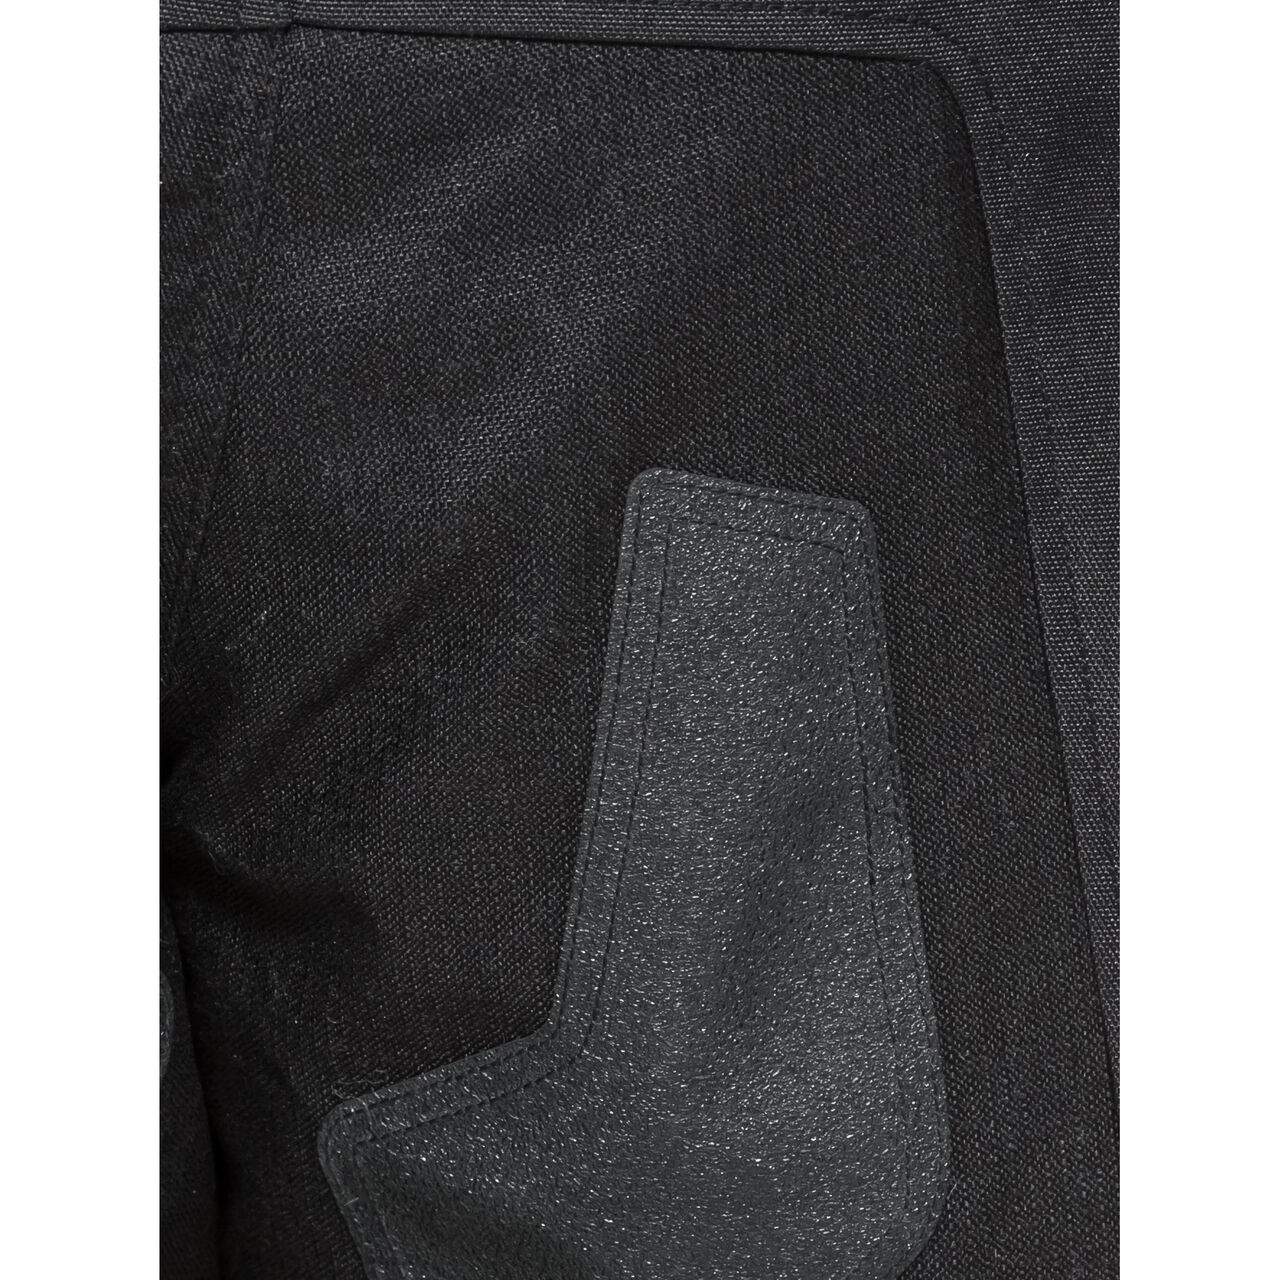 Cedar WP Textilhose schwarz 3XL